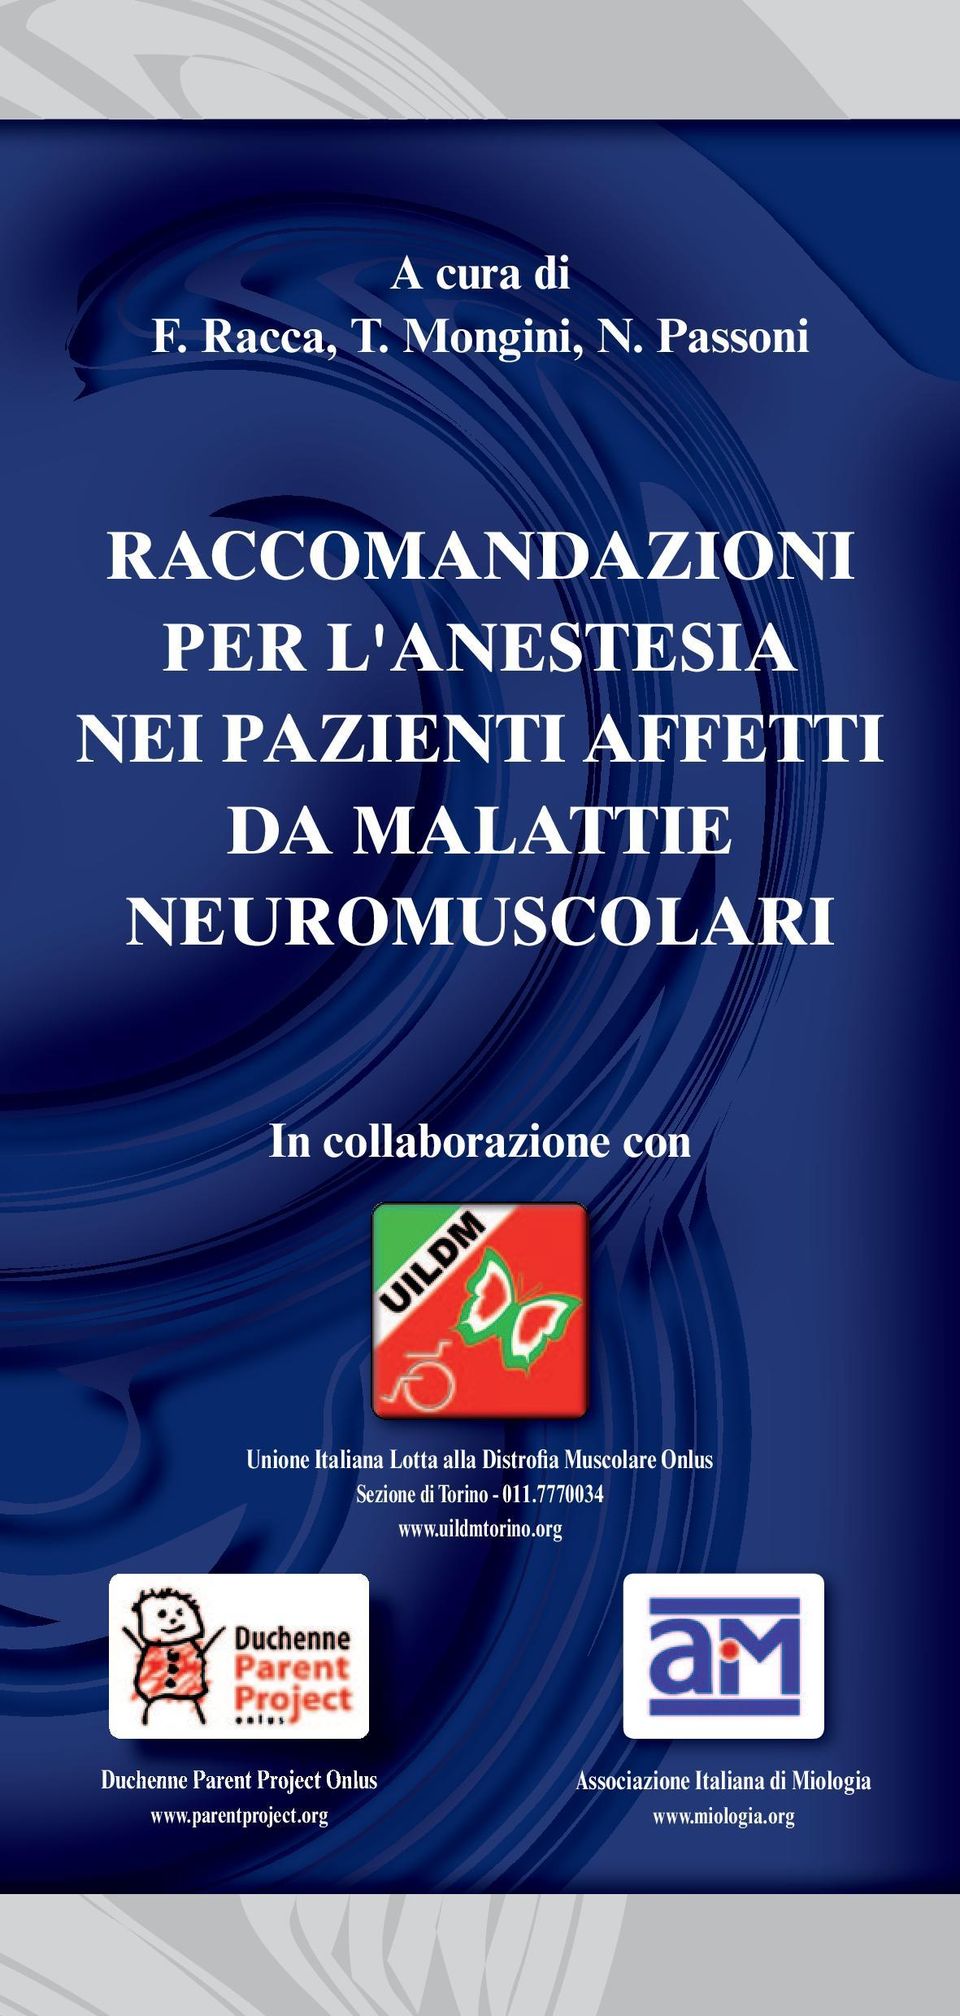 In collaborazione con Unione Italiana Lotta alla Distrofia Muscolare Onlus Sezione di